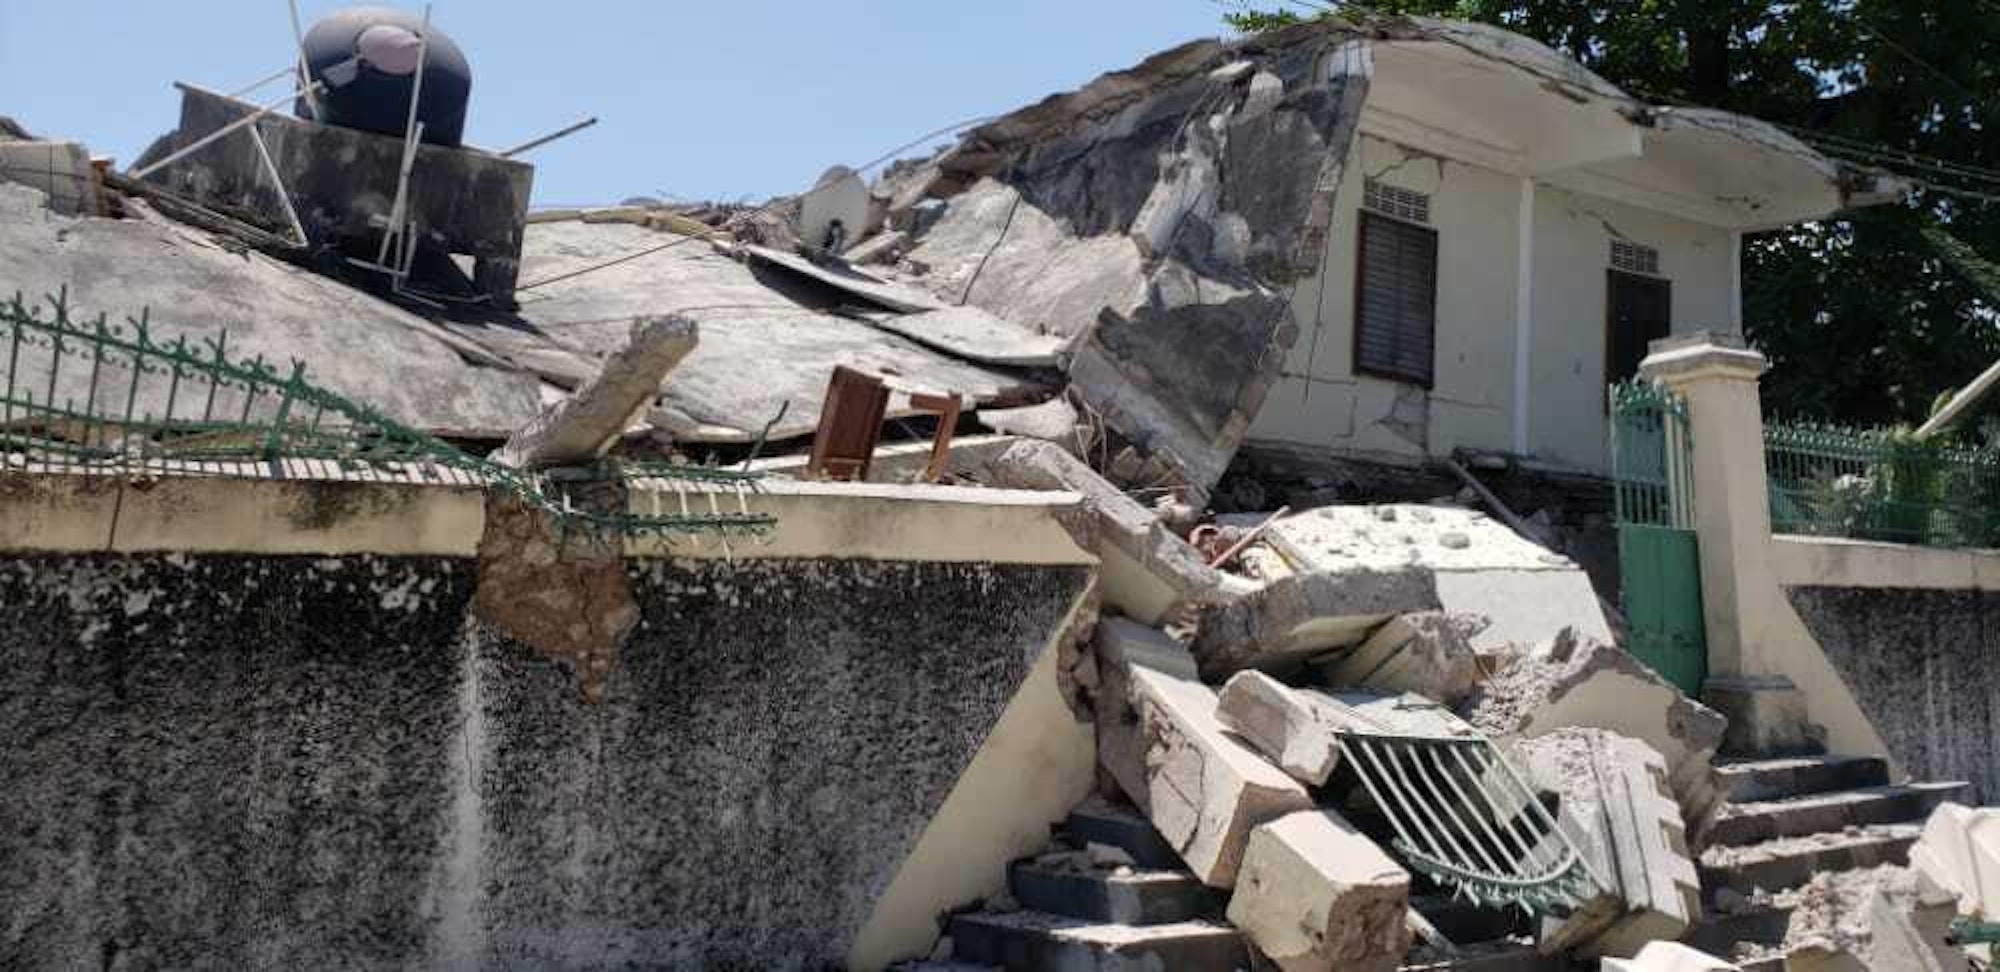 Das Anwesen eines katholischen Bischofs wurde in Les Cayes nach dem Erdbeben in Haiti ebenfalls zerstört.